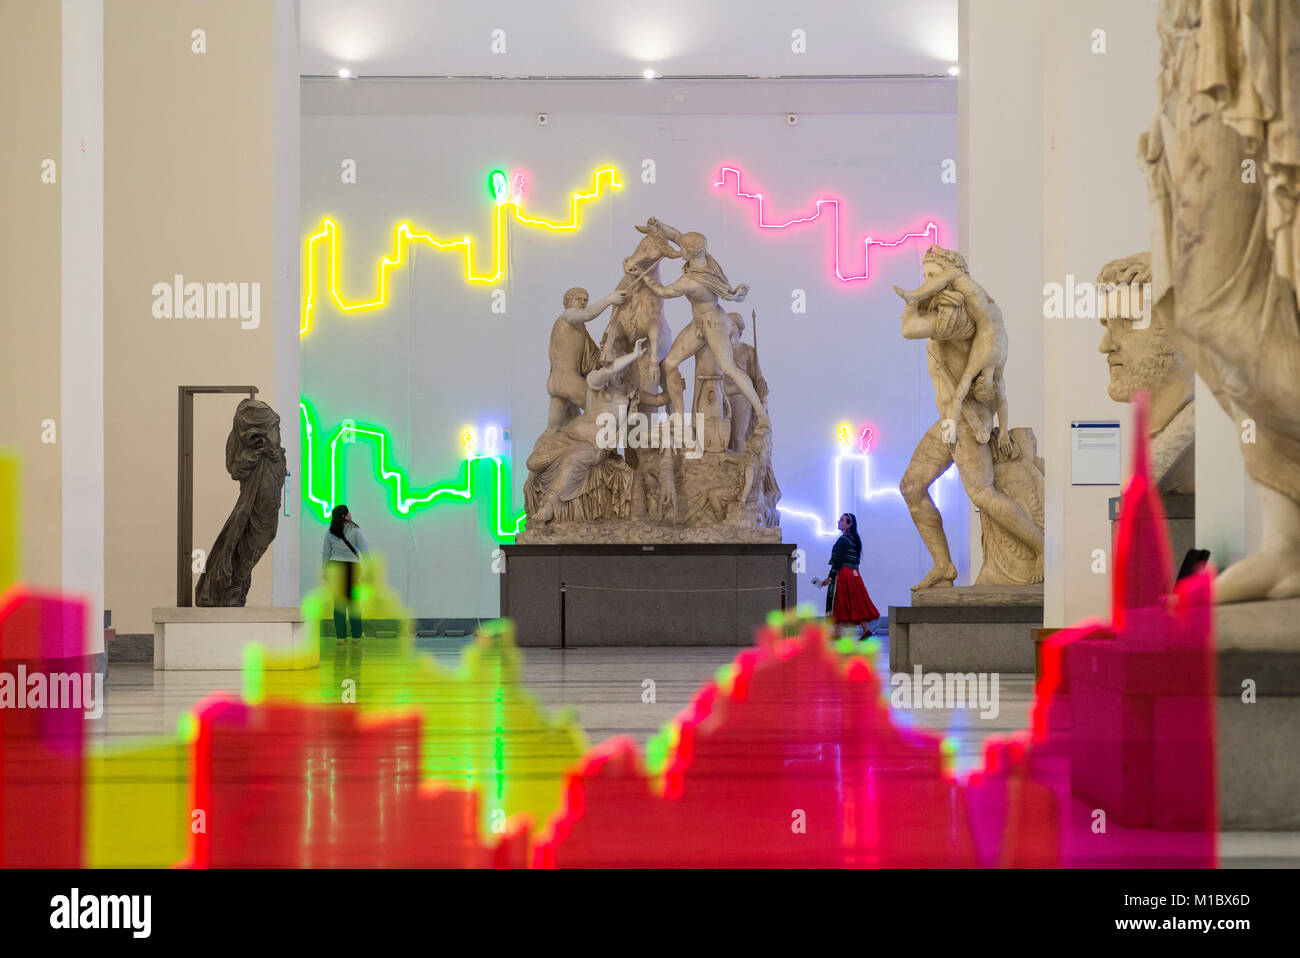 Napoli. L'Italia. I visitatori al Museo Archeologico Nazionale di Napoli guardando i Farnese collezione di sculture, con specifica per il sito di installazione, "Proiez Foto Stock